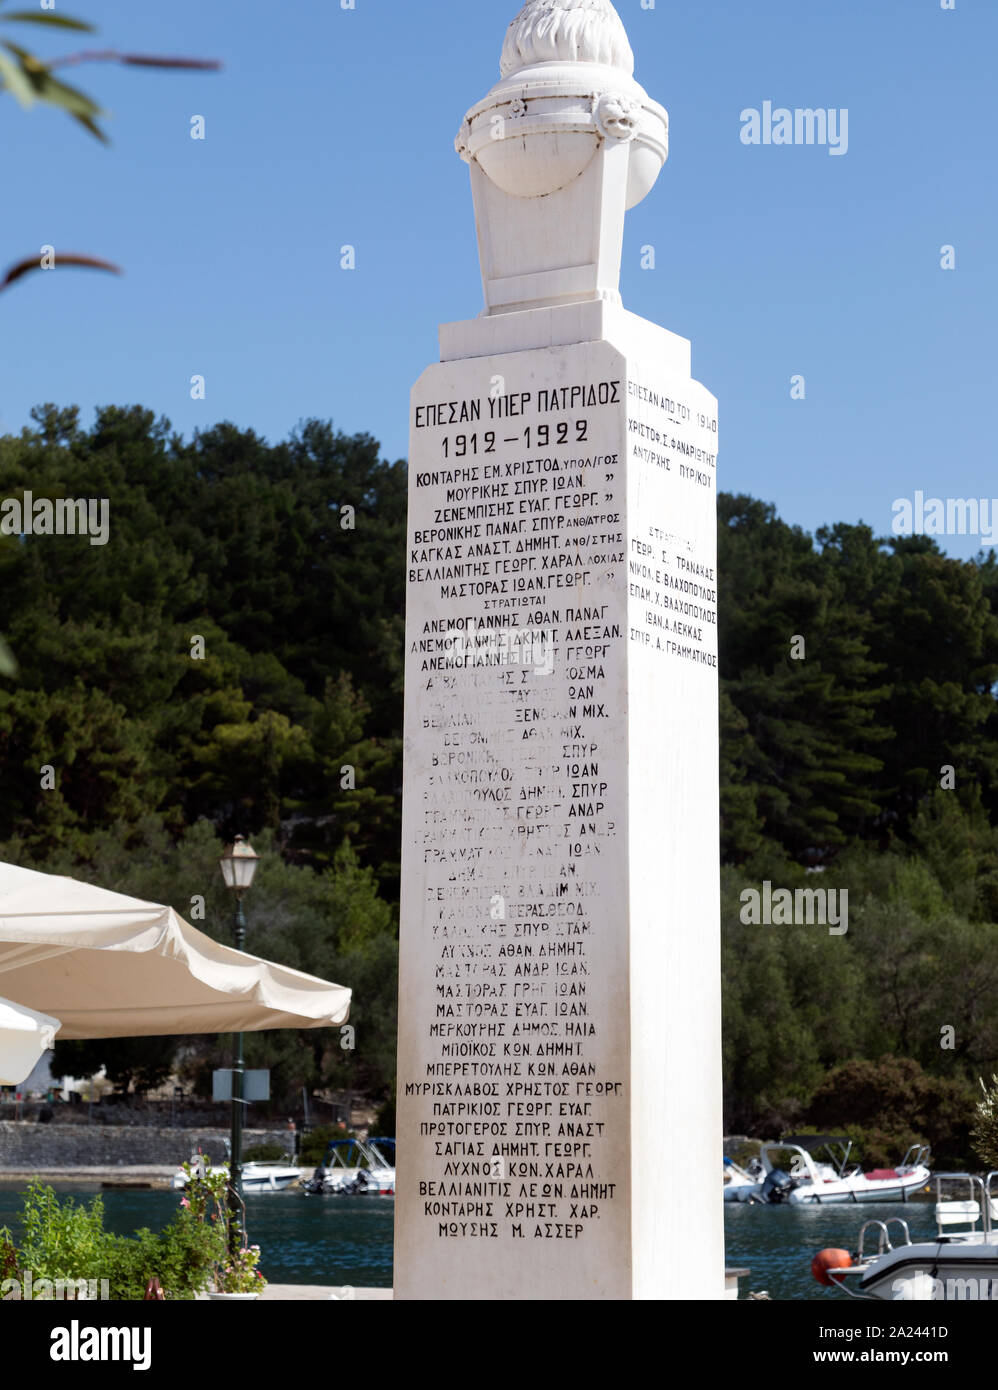 Il Memoriale di guerra nella città di Gaios Paxos isole Greche - Grecia Foto Stock